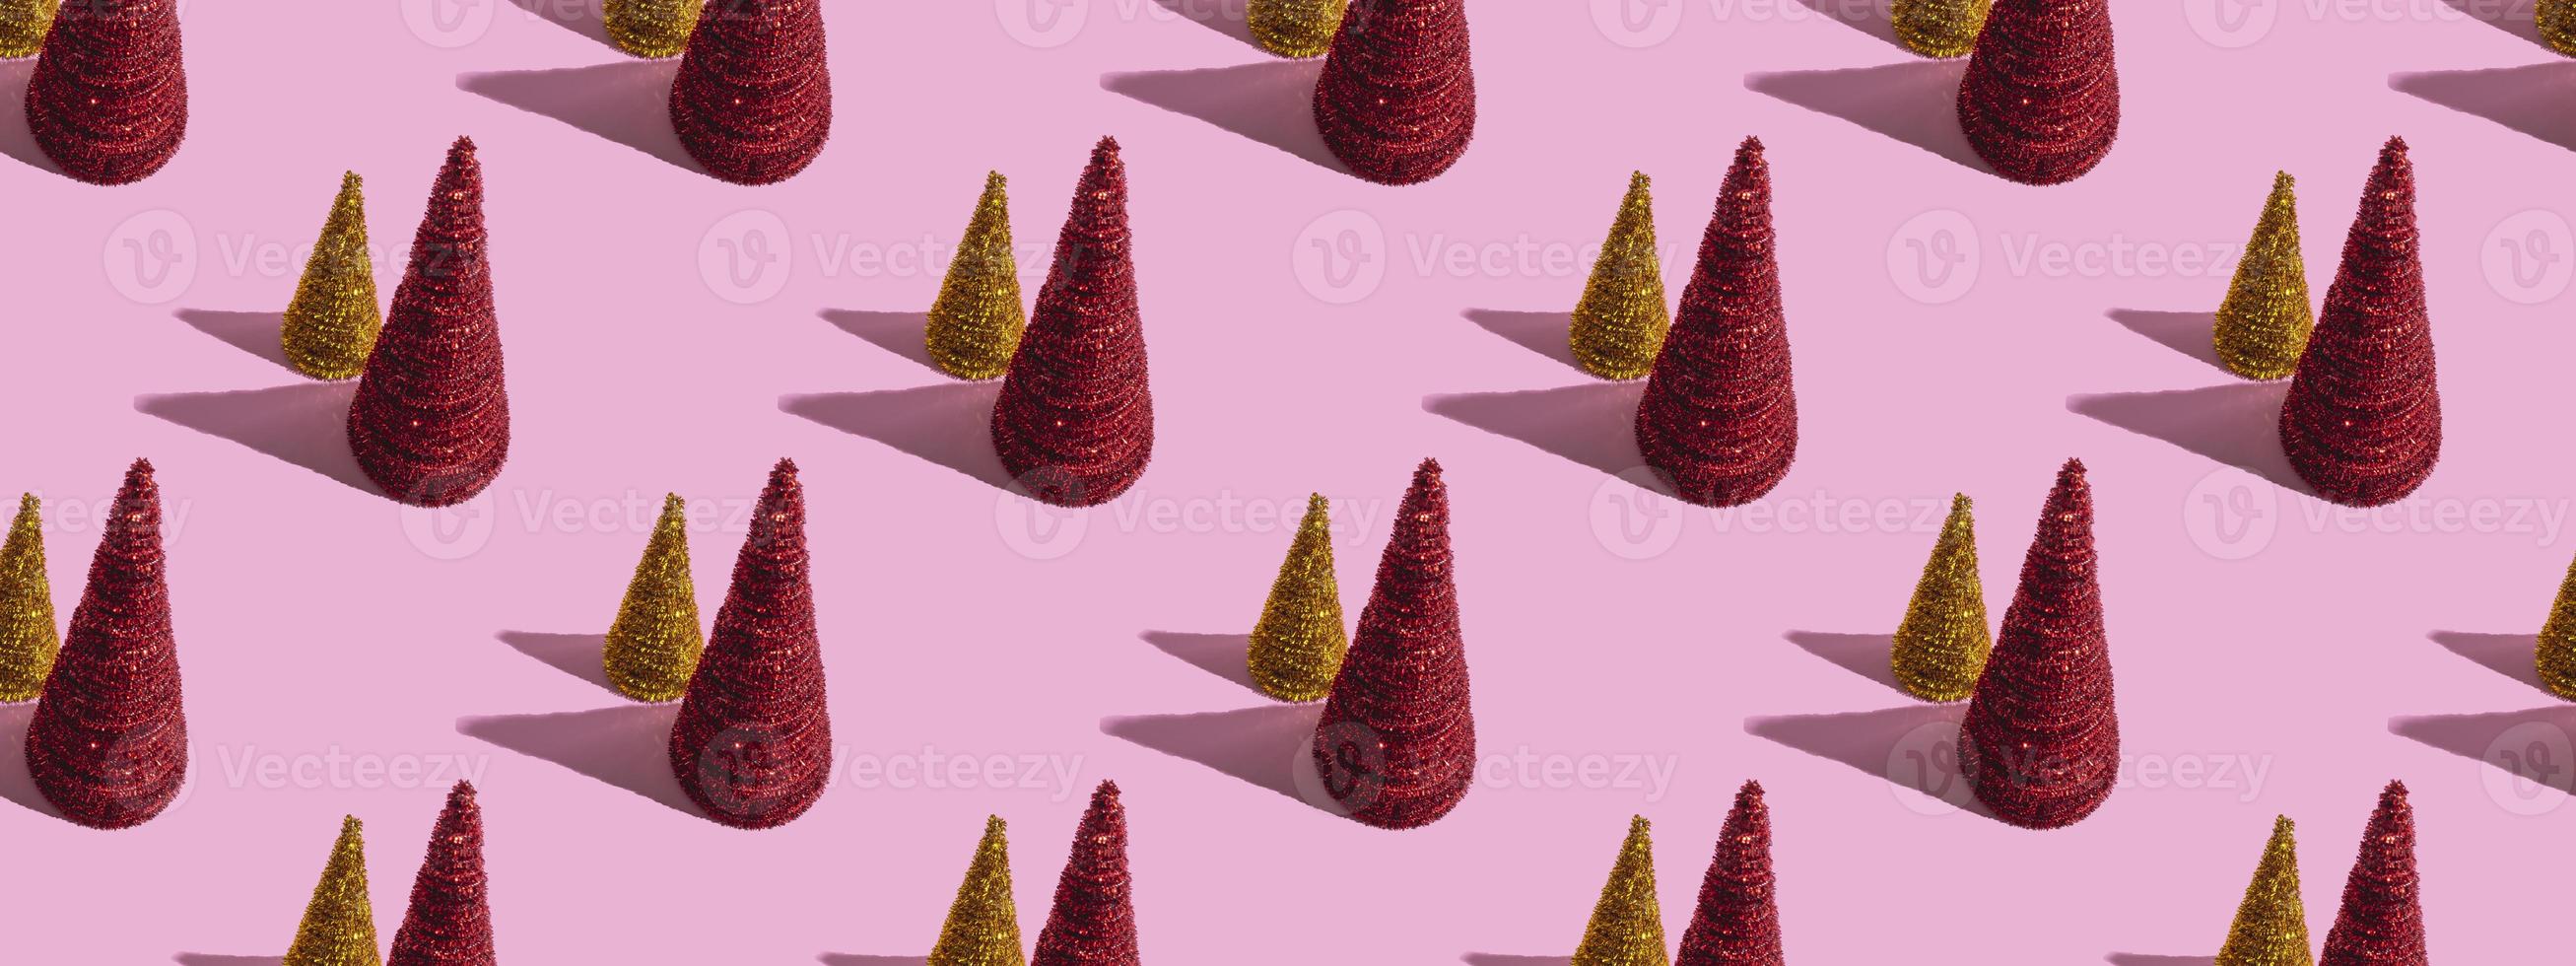 arbres de noël colorés sur fond rose. concept de noël, modèle sans couture photo